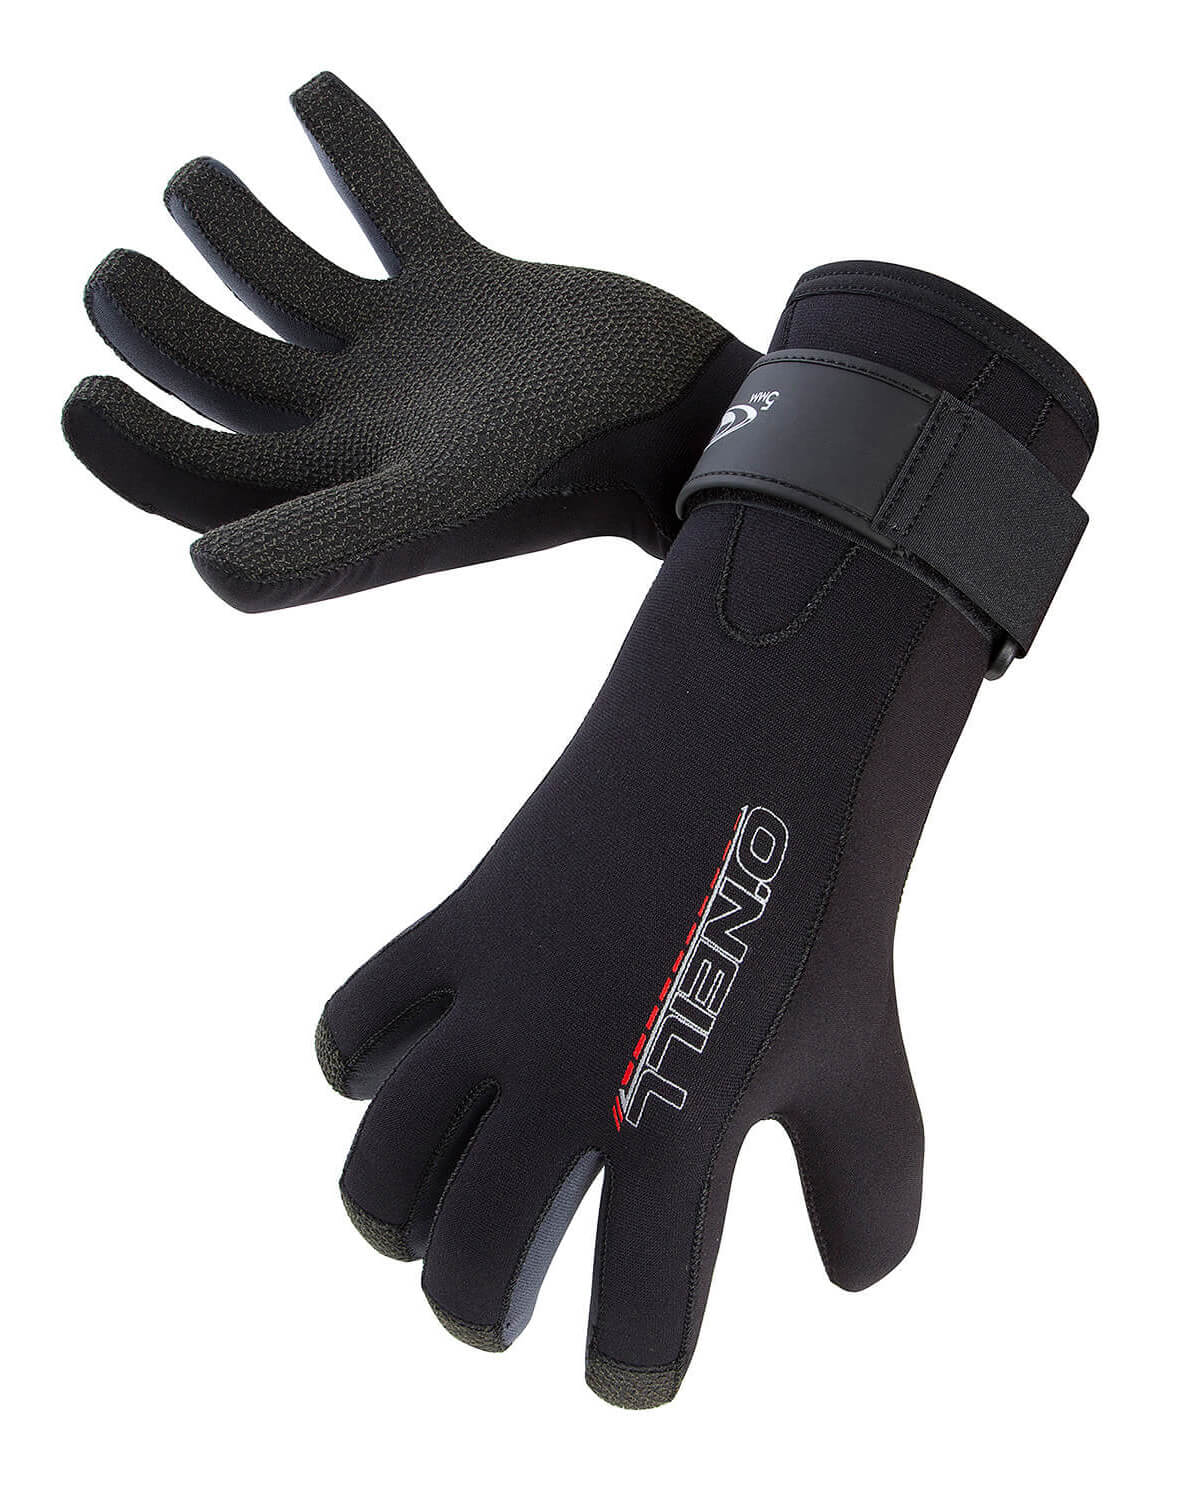 5mm O'Neill Sector Kevlar SCUBA Gloves